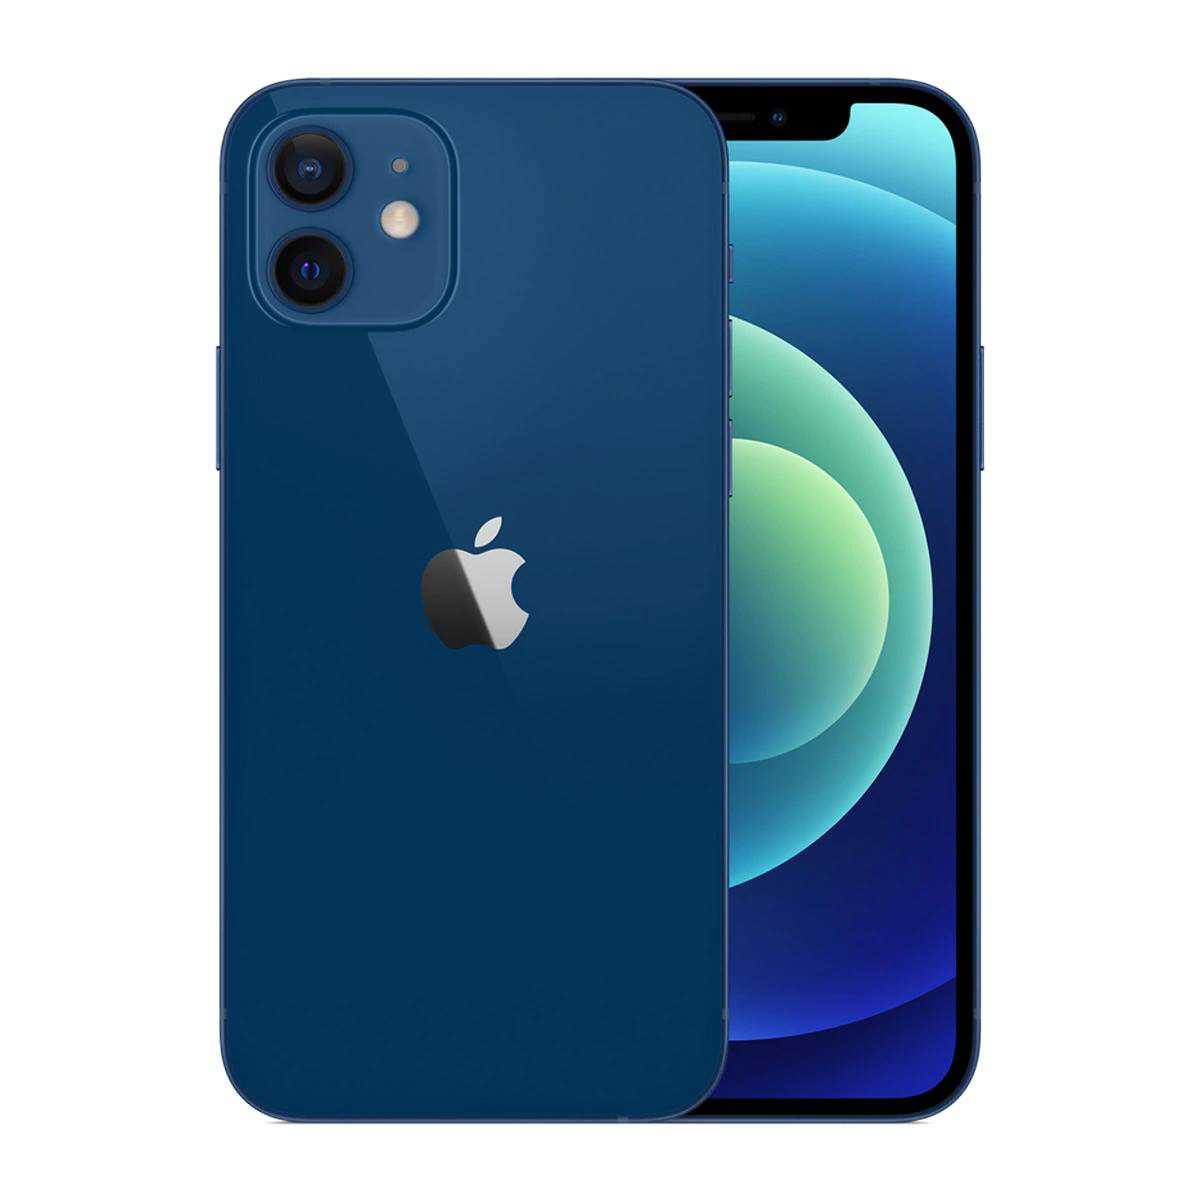 Hãy cùng chiêm ngưỡng vẻ đẹp mới toanh của iPhone 12 màu xanh blue với màn hình OLED siêu nét và hiệu năng vượt trội. Đây là lựa chọn hoàn hảo cho những ai yêu thích phong cách độc đáo và nổi bật.